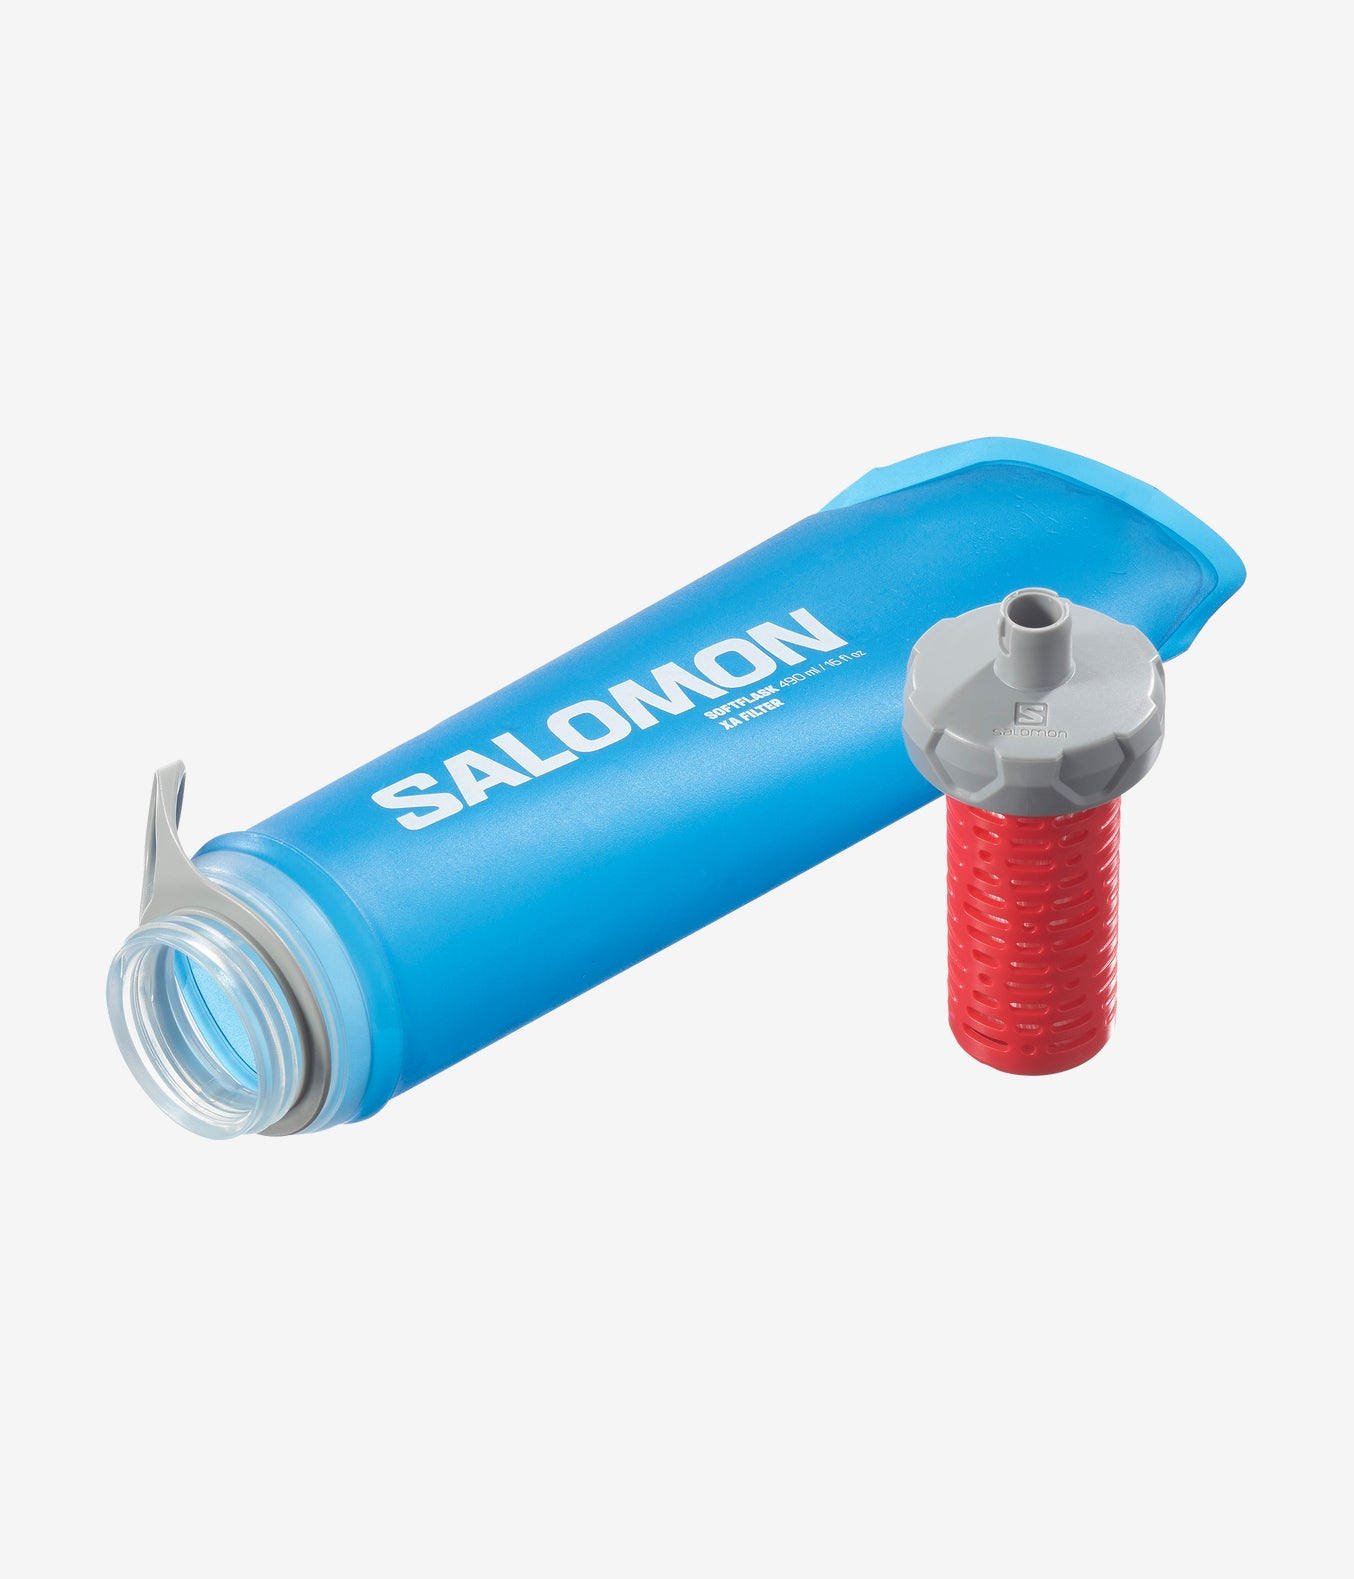 Salomon Softflask XA Filter